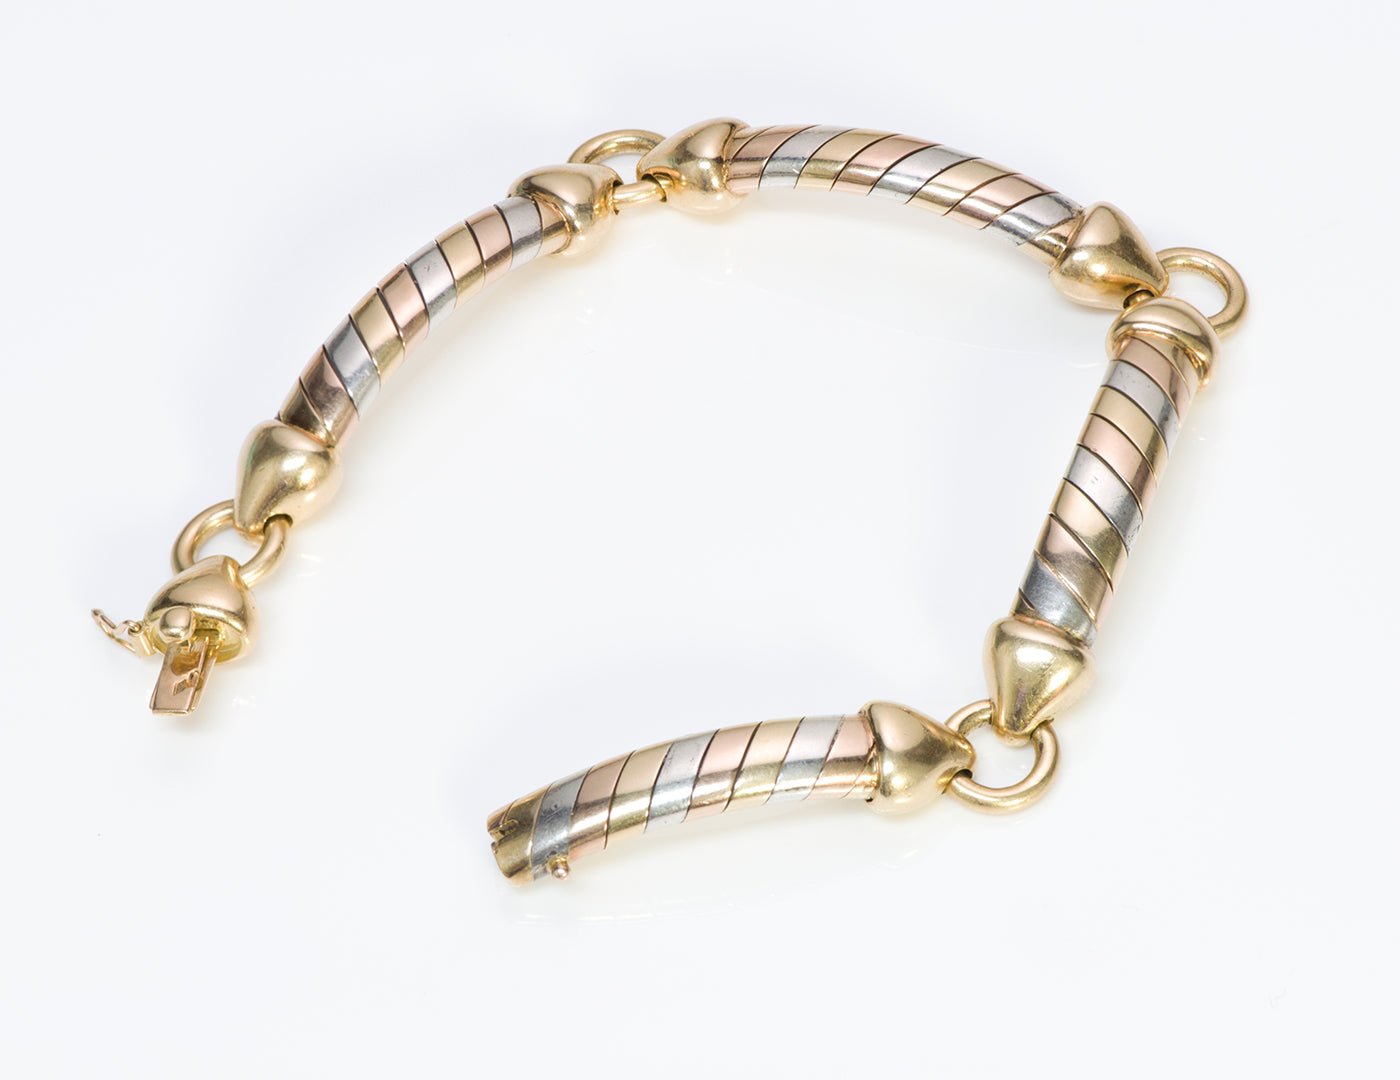 Van Cleef & Arpels 18K Gold & Silver Necklace Bracelet